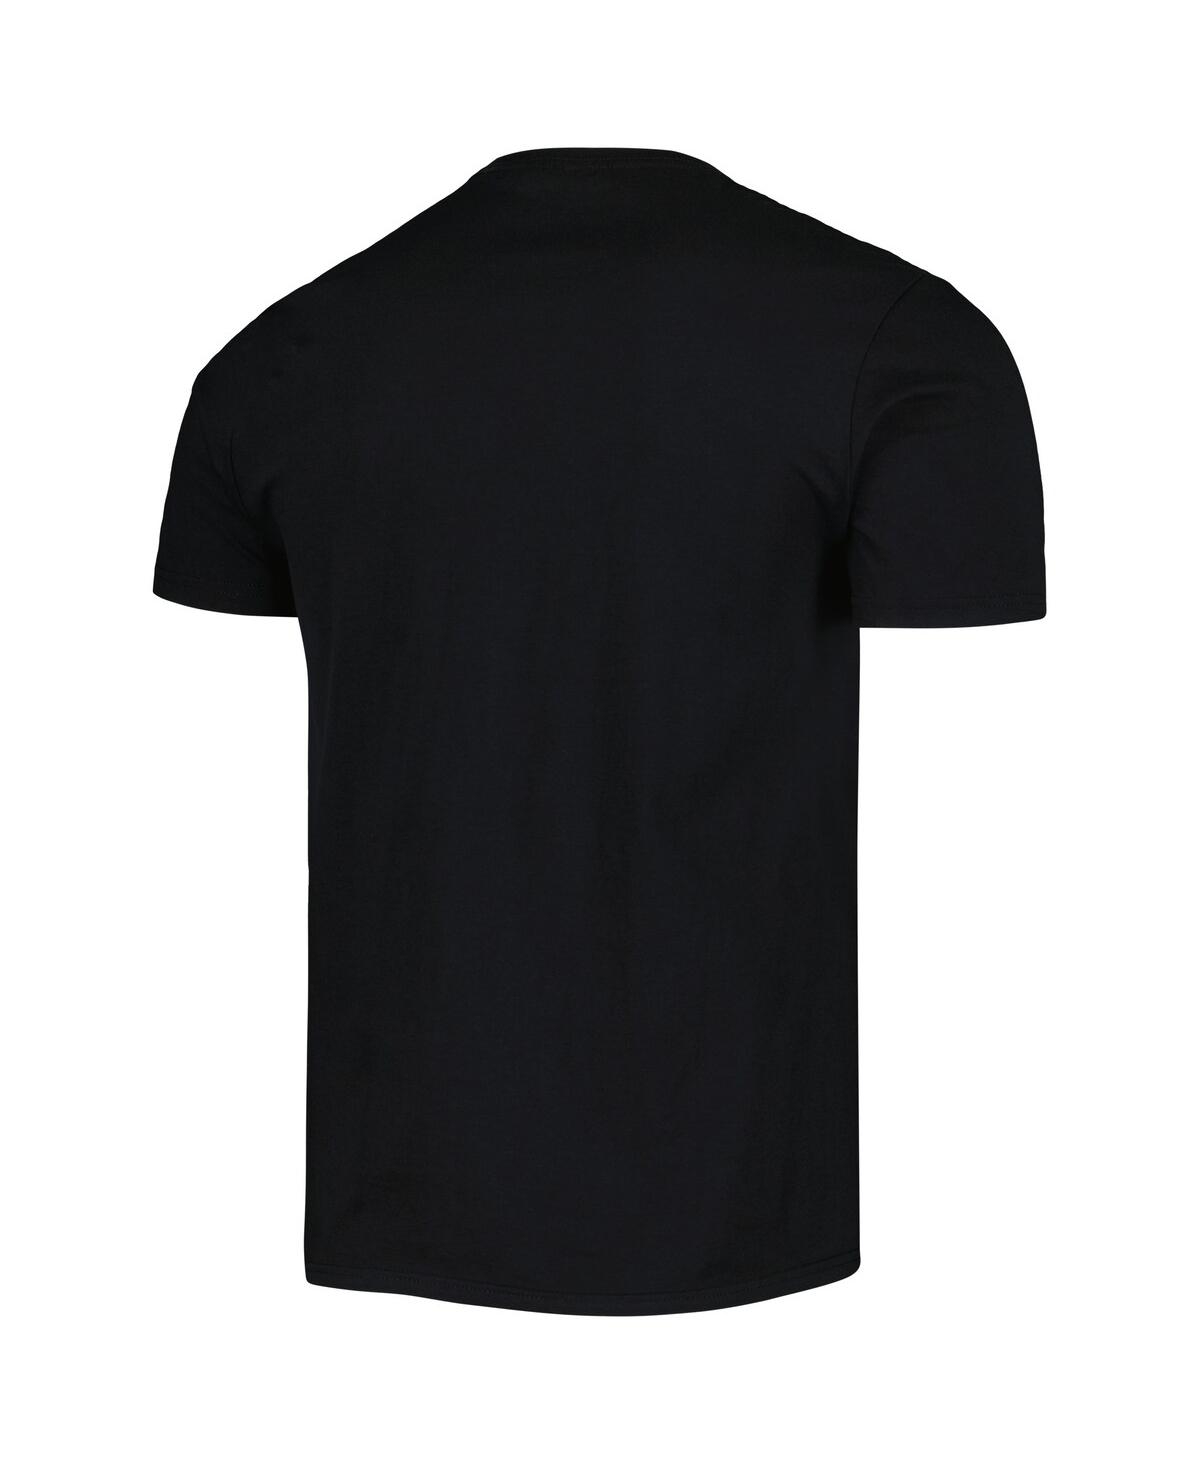 Shop Philcos Men's And Women's Black Big Pun Graphic T-shirt